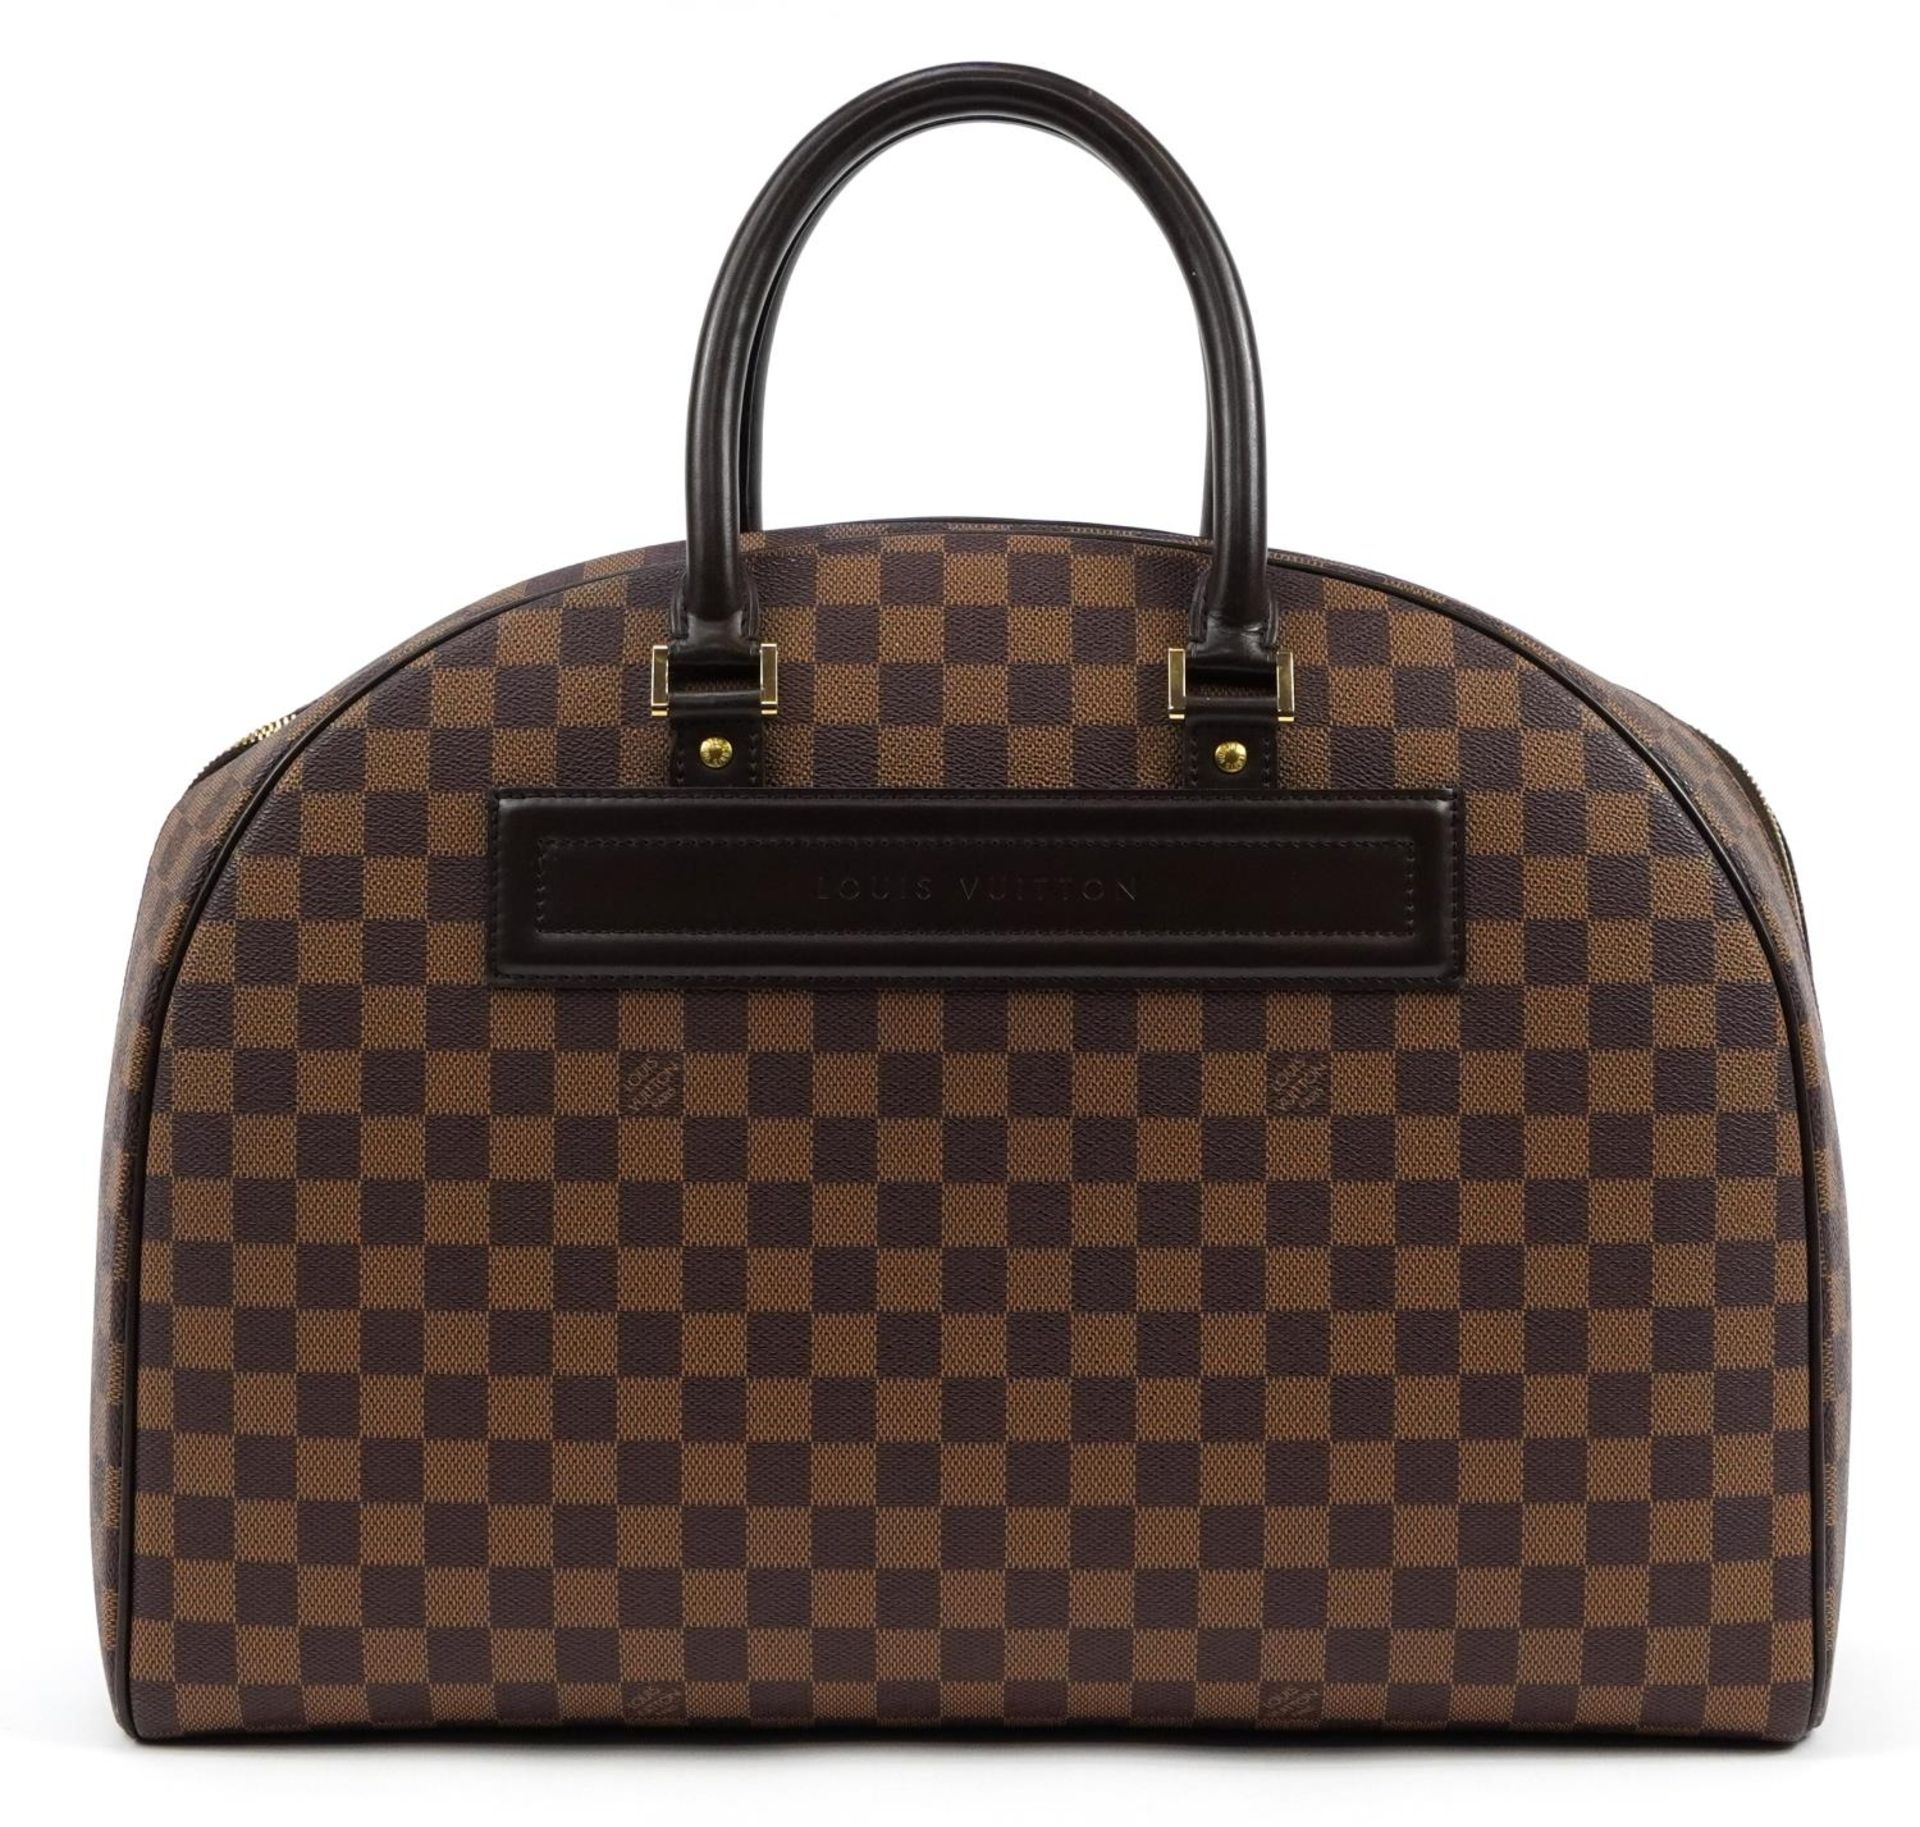 Louis Vuitton Damier Ebene Nolita satchel bag with two canvas straps, date code SP0939, 32cm x 44. - Image 3 of 7